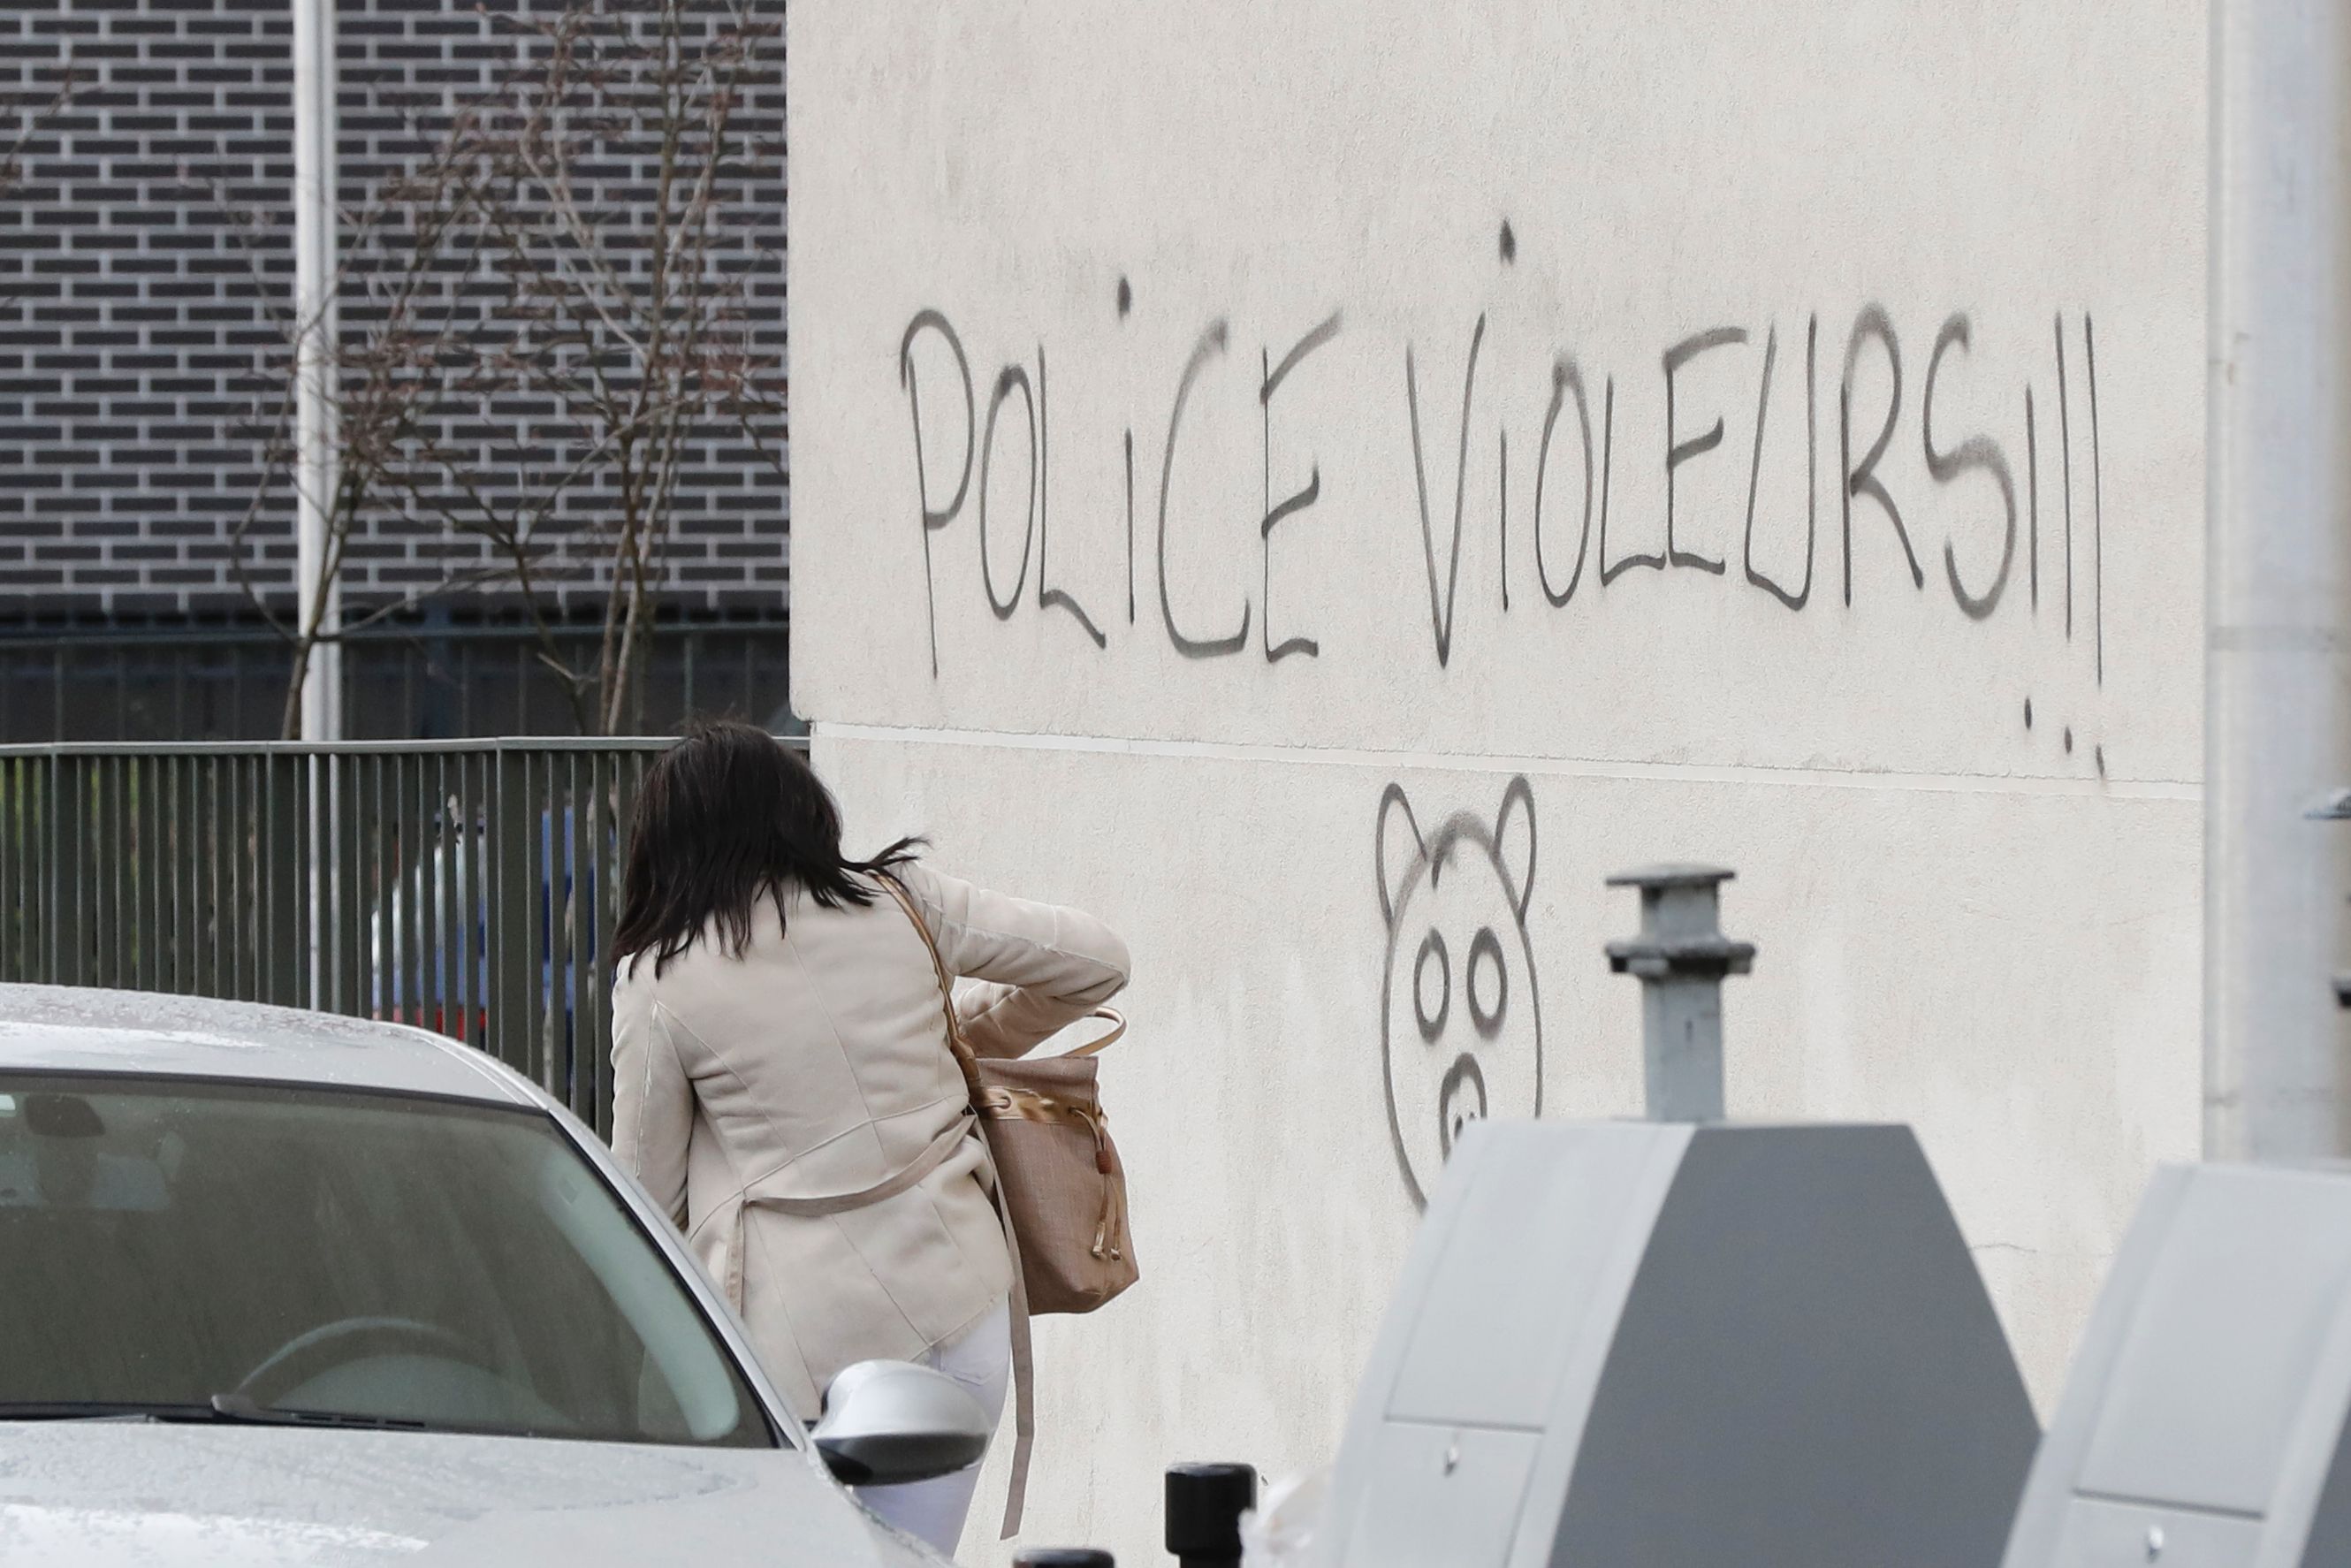 عبارة منددة بالشرطة الفرنسية